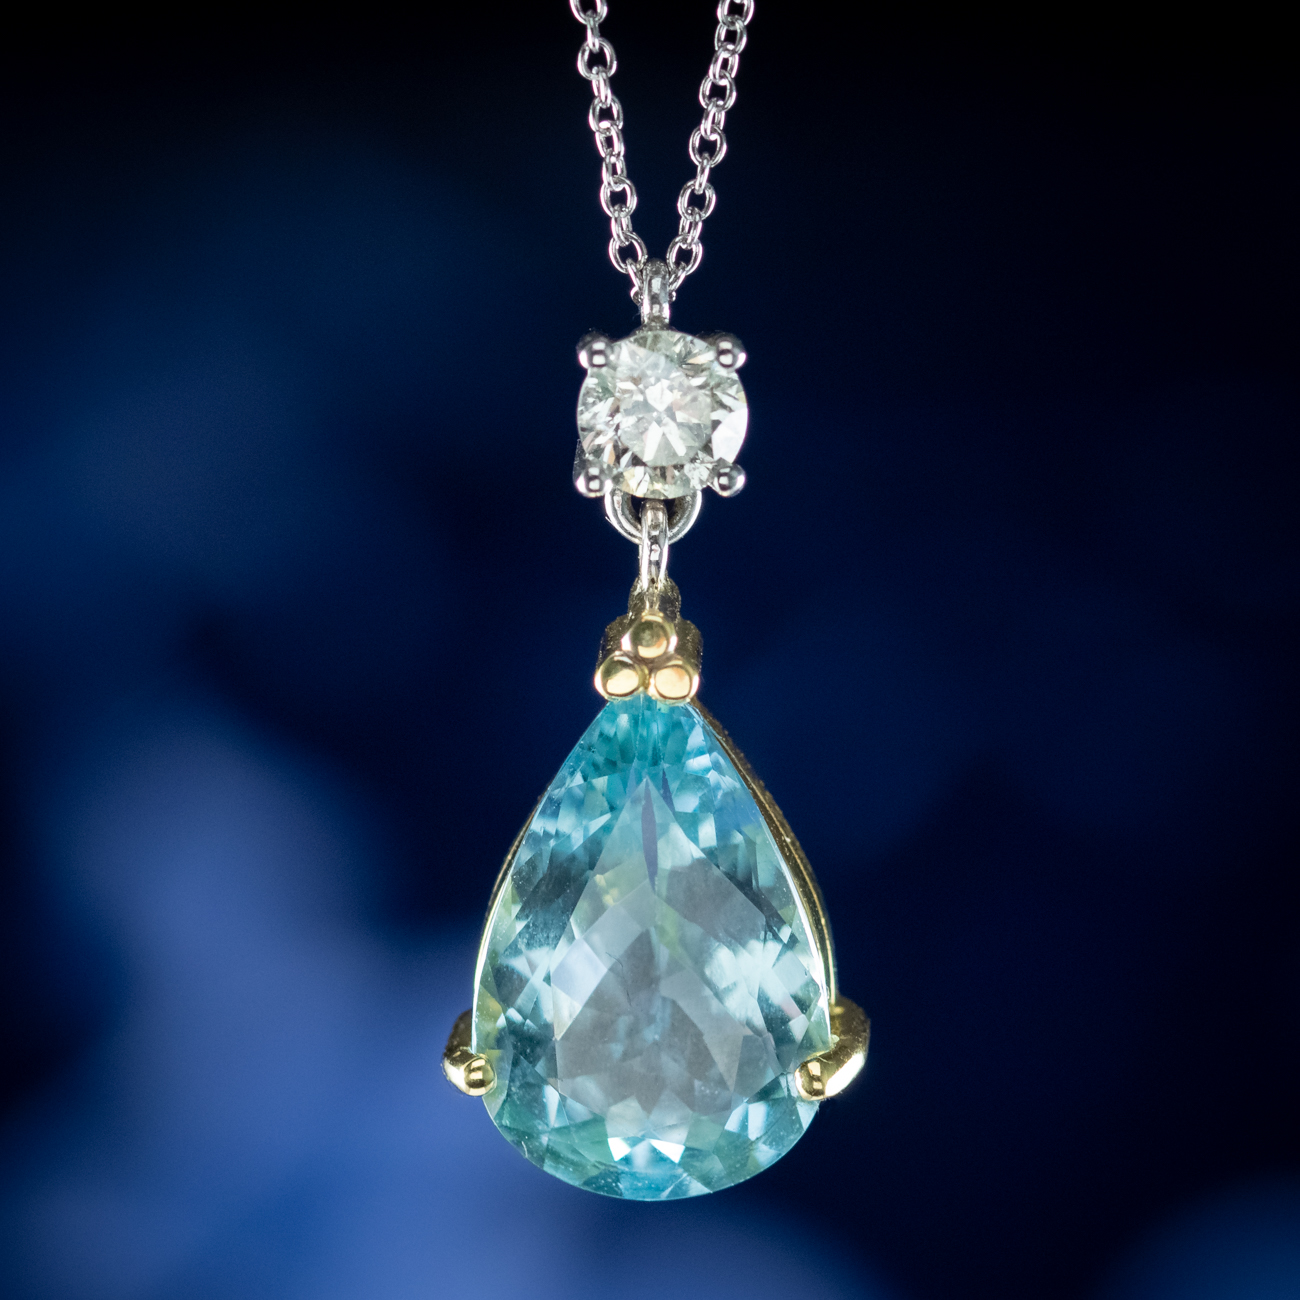 Art Deco Style Aquamarine Diamond Pendant Necklace 18ct Gold 6ct Aqua